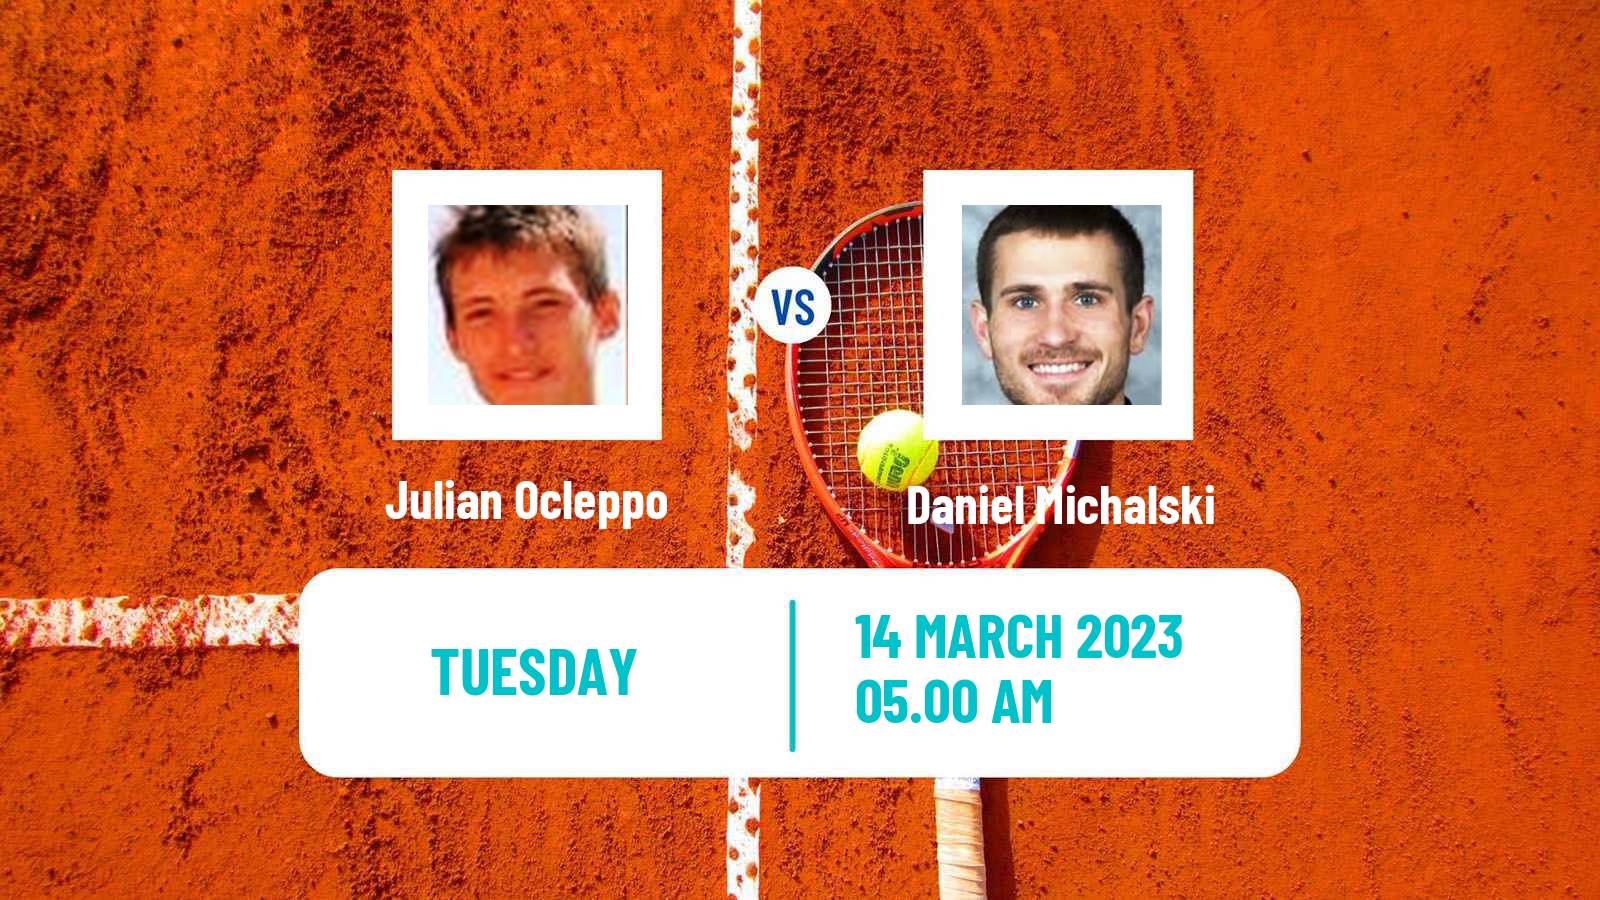 Tennis ATP Challenger Julian Ocleppo - Daniel Michalski